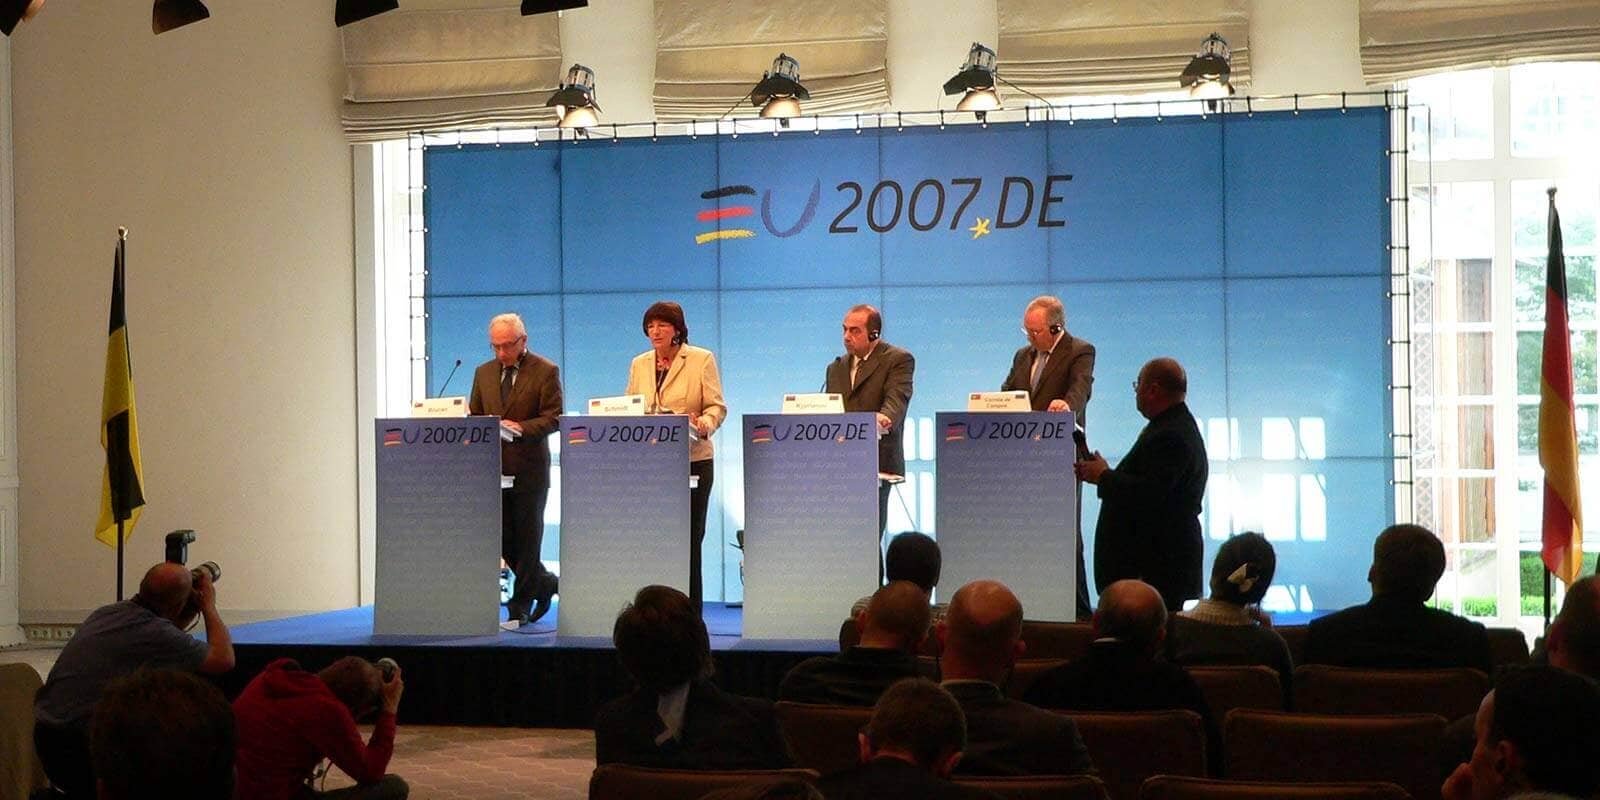 Konferenztechnik für das EU2007 Treffen